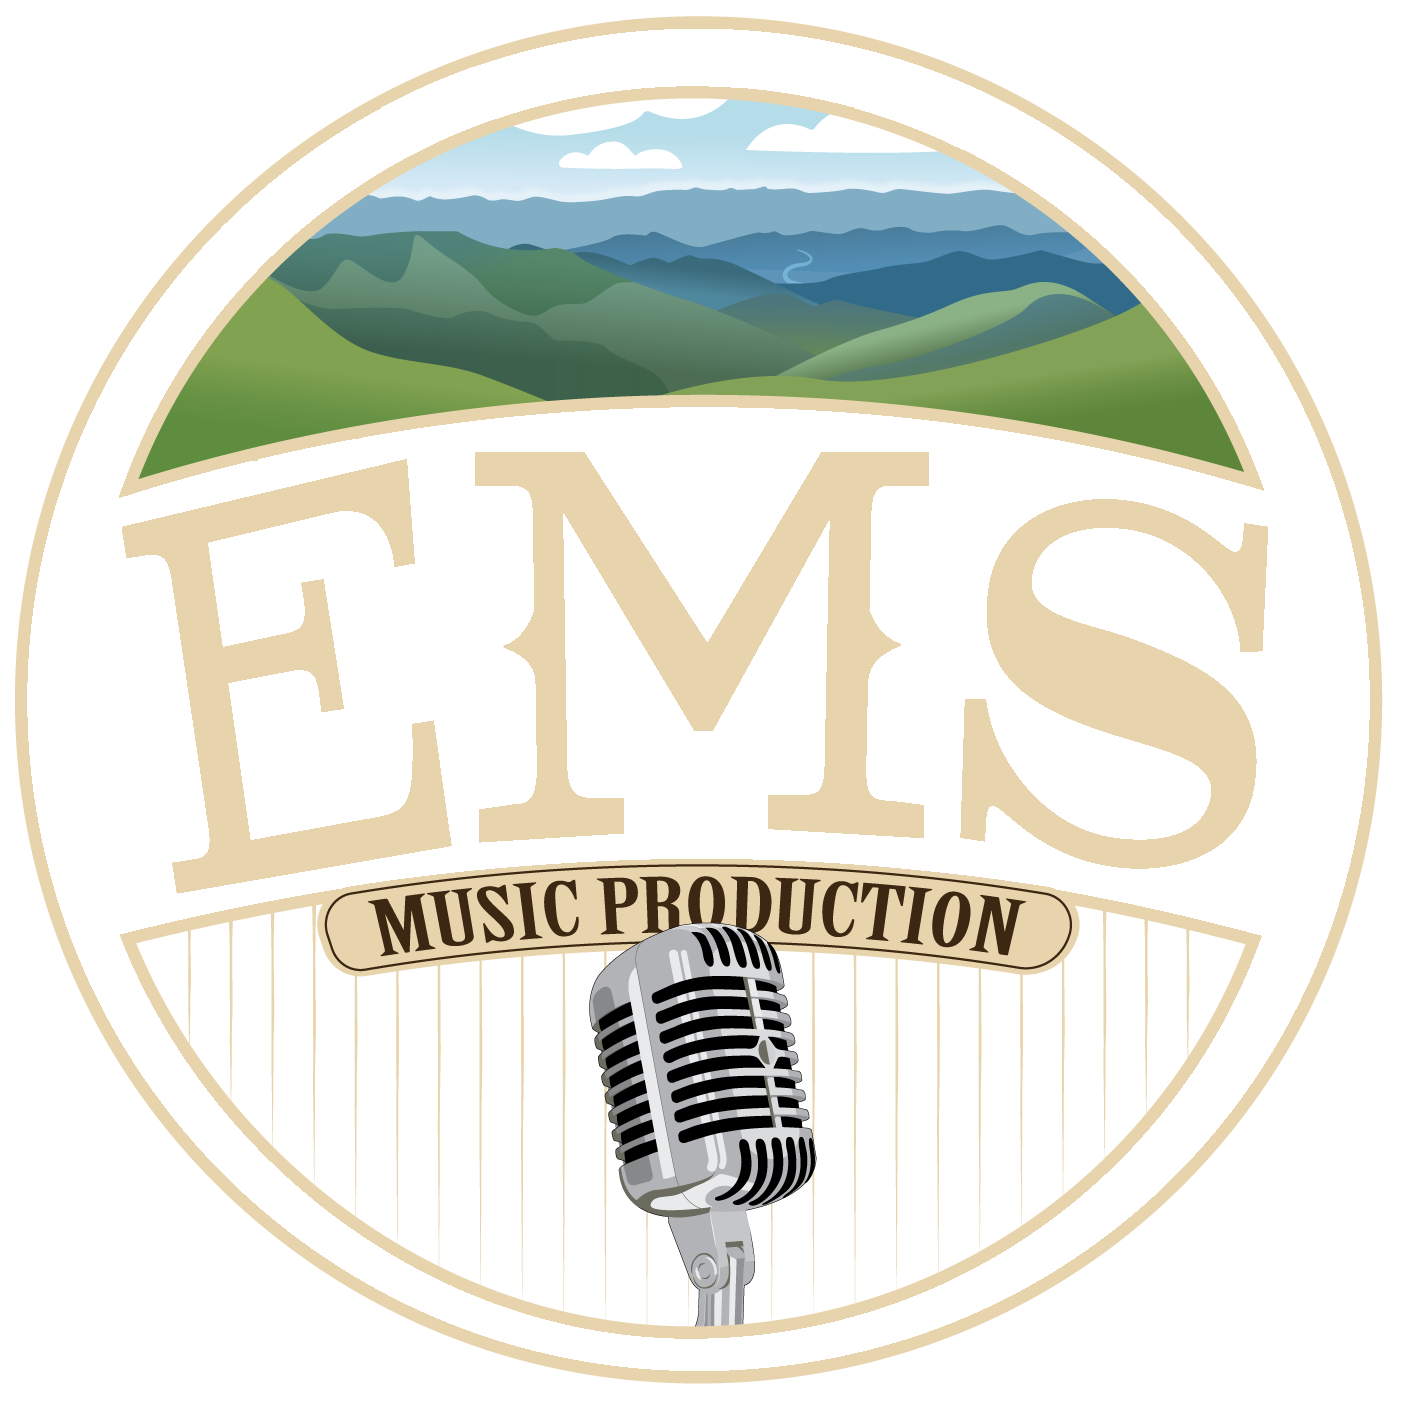 Business logo of Evans Media Source